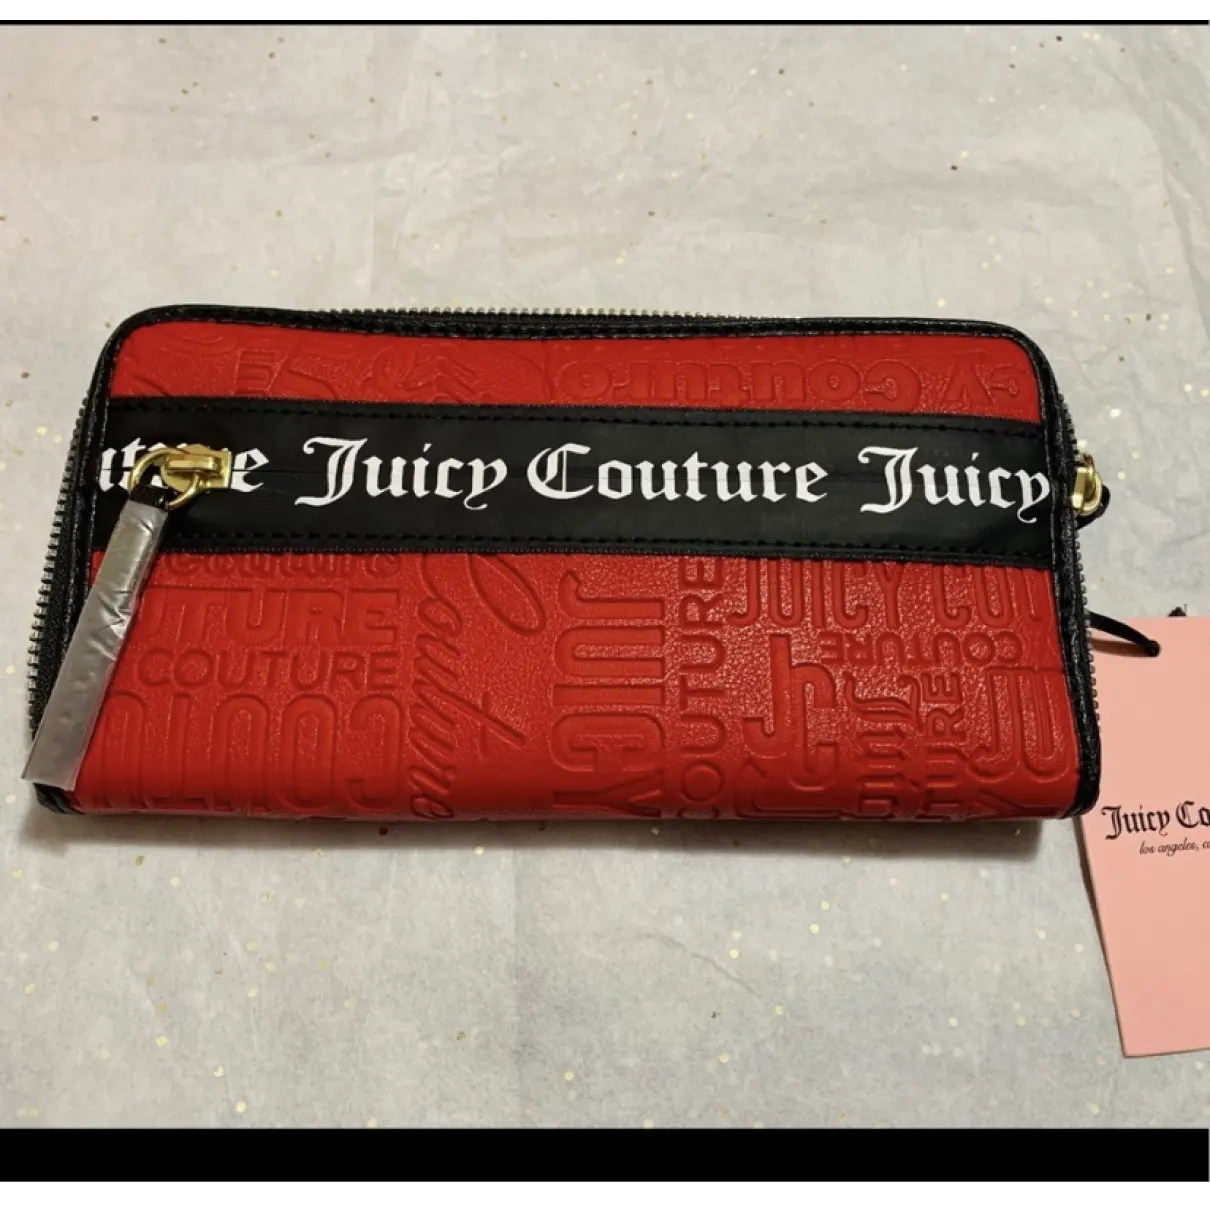 Buy Juicy Couture Wallet online